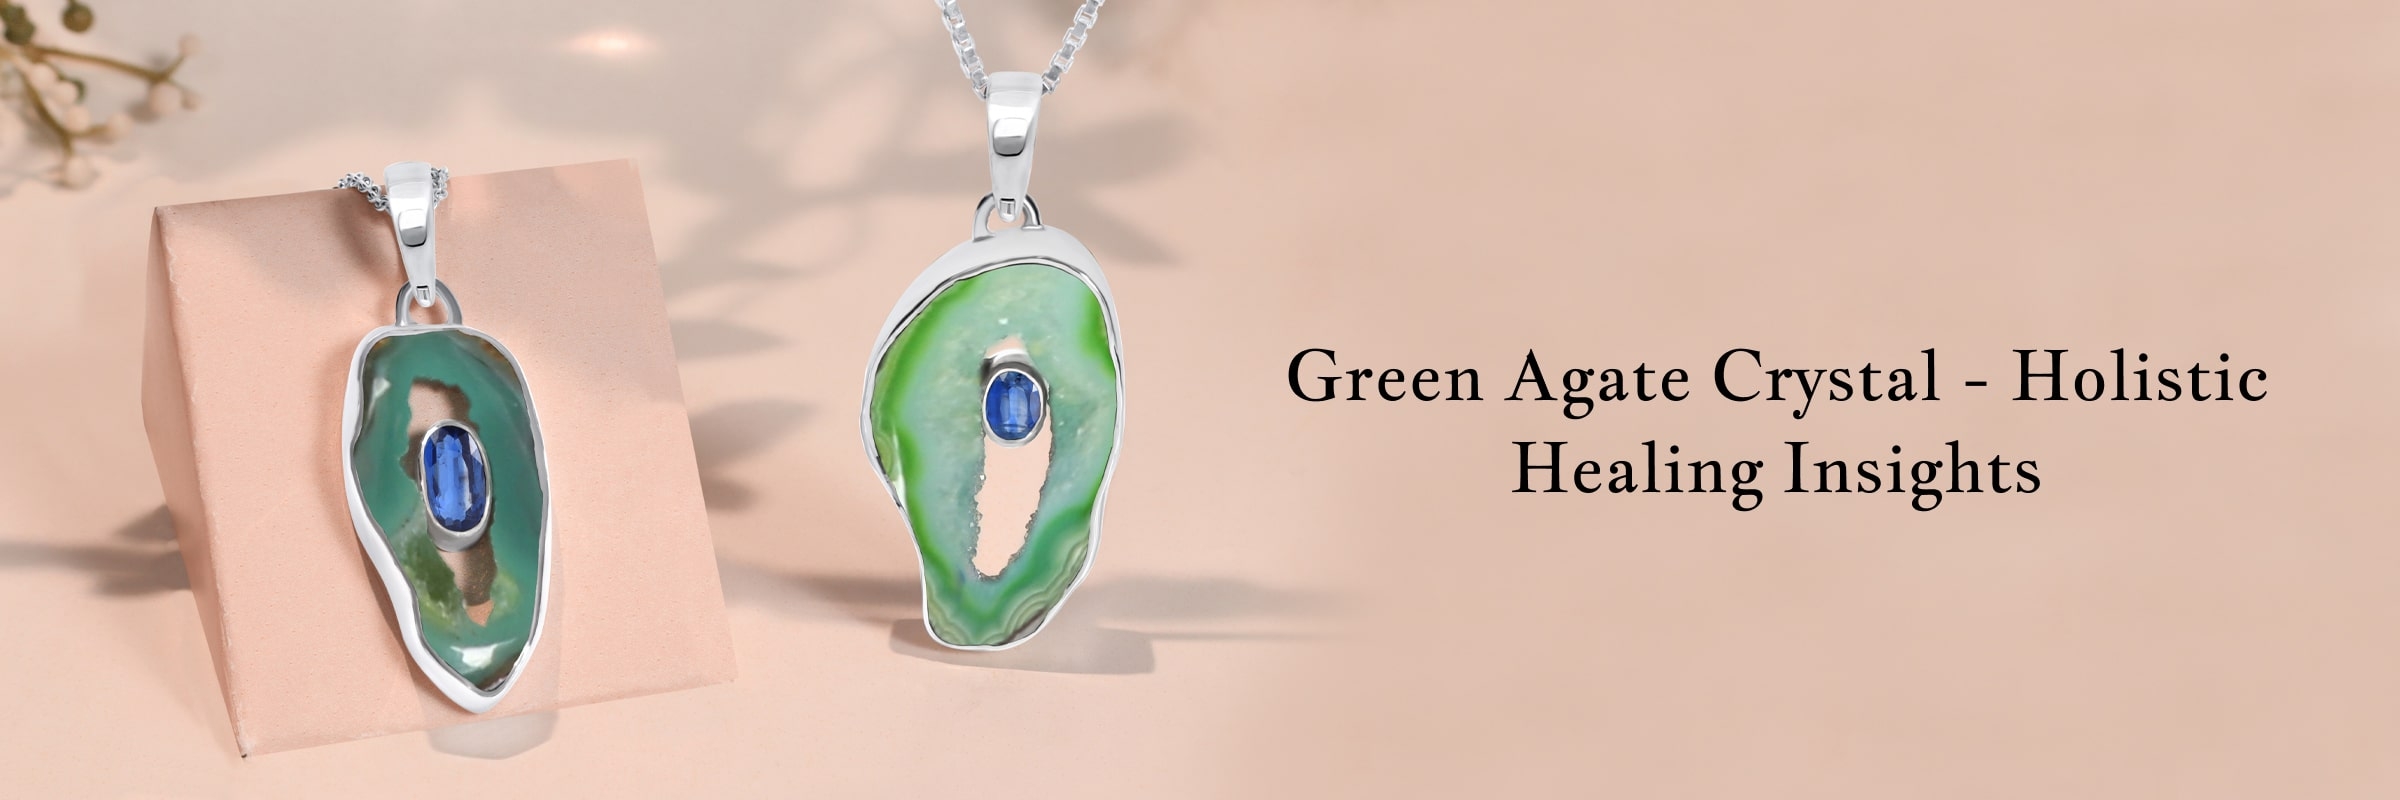 Healing Properties of Green Agate Crystal